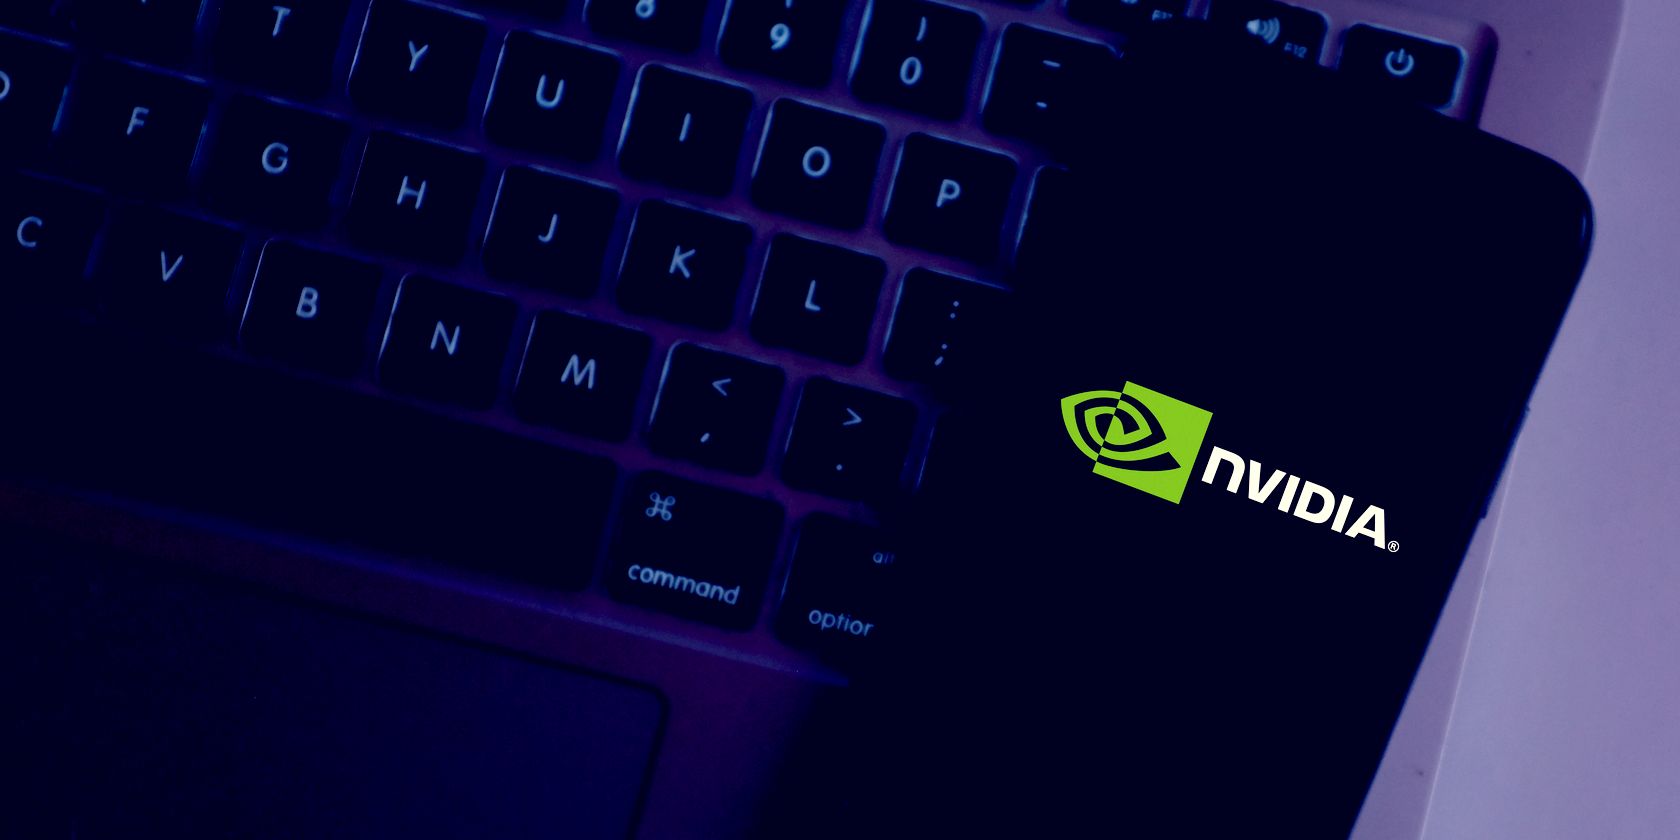 nvidia logo on phone feature